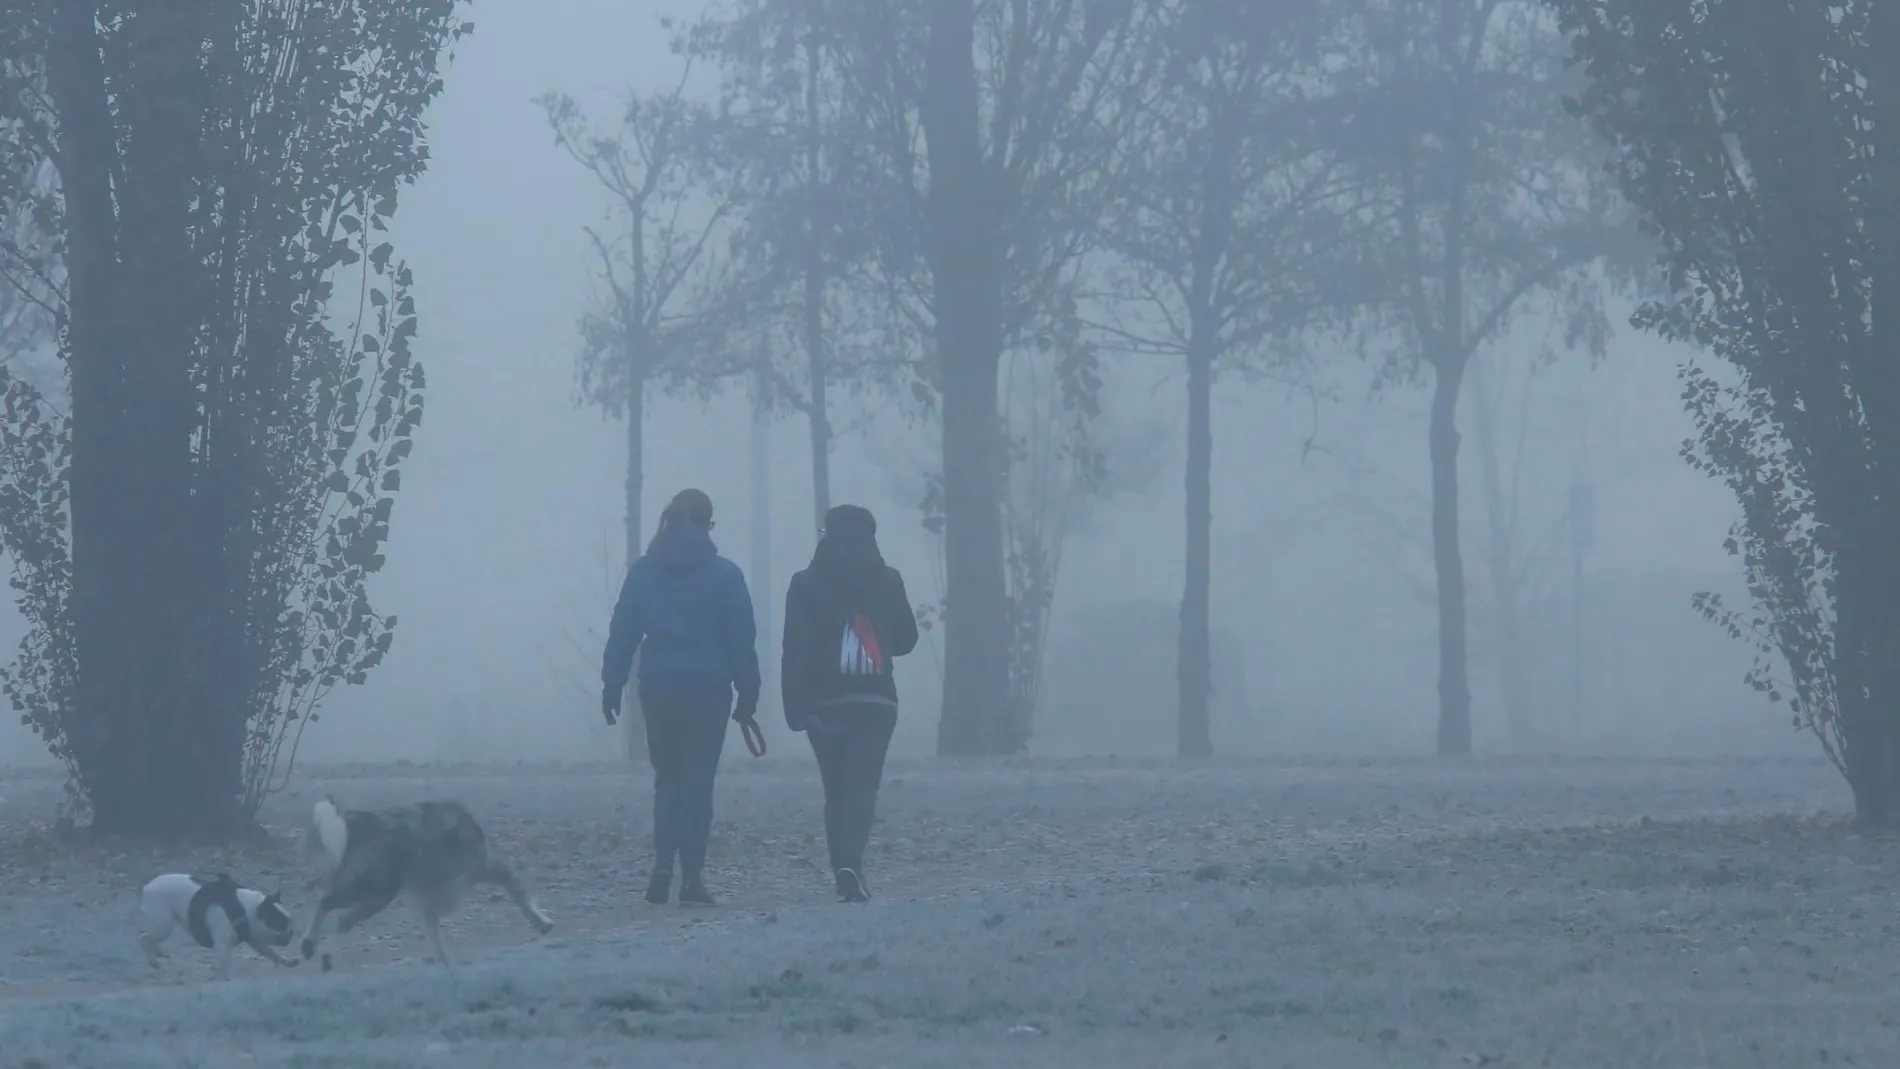 Dos mujeres pasean a sus perros bajo la niebla, frío y helada en Ponferrada